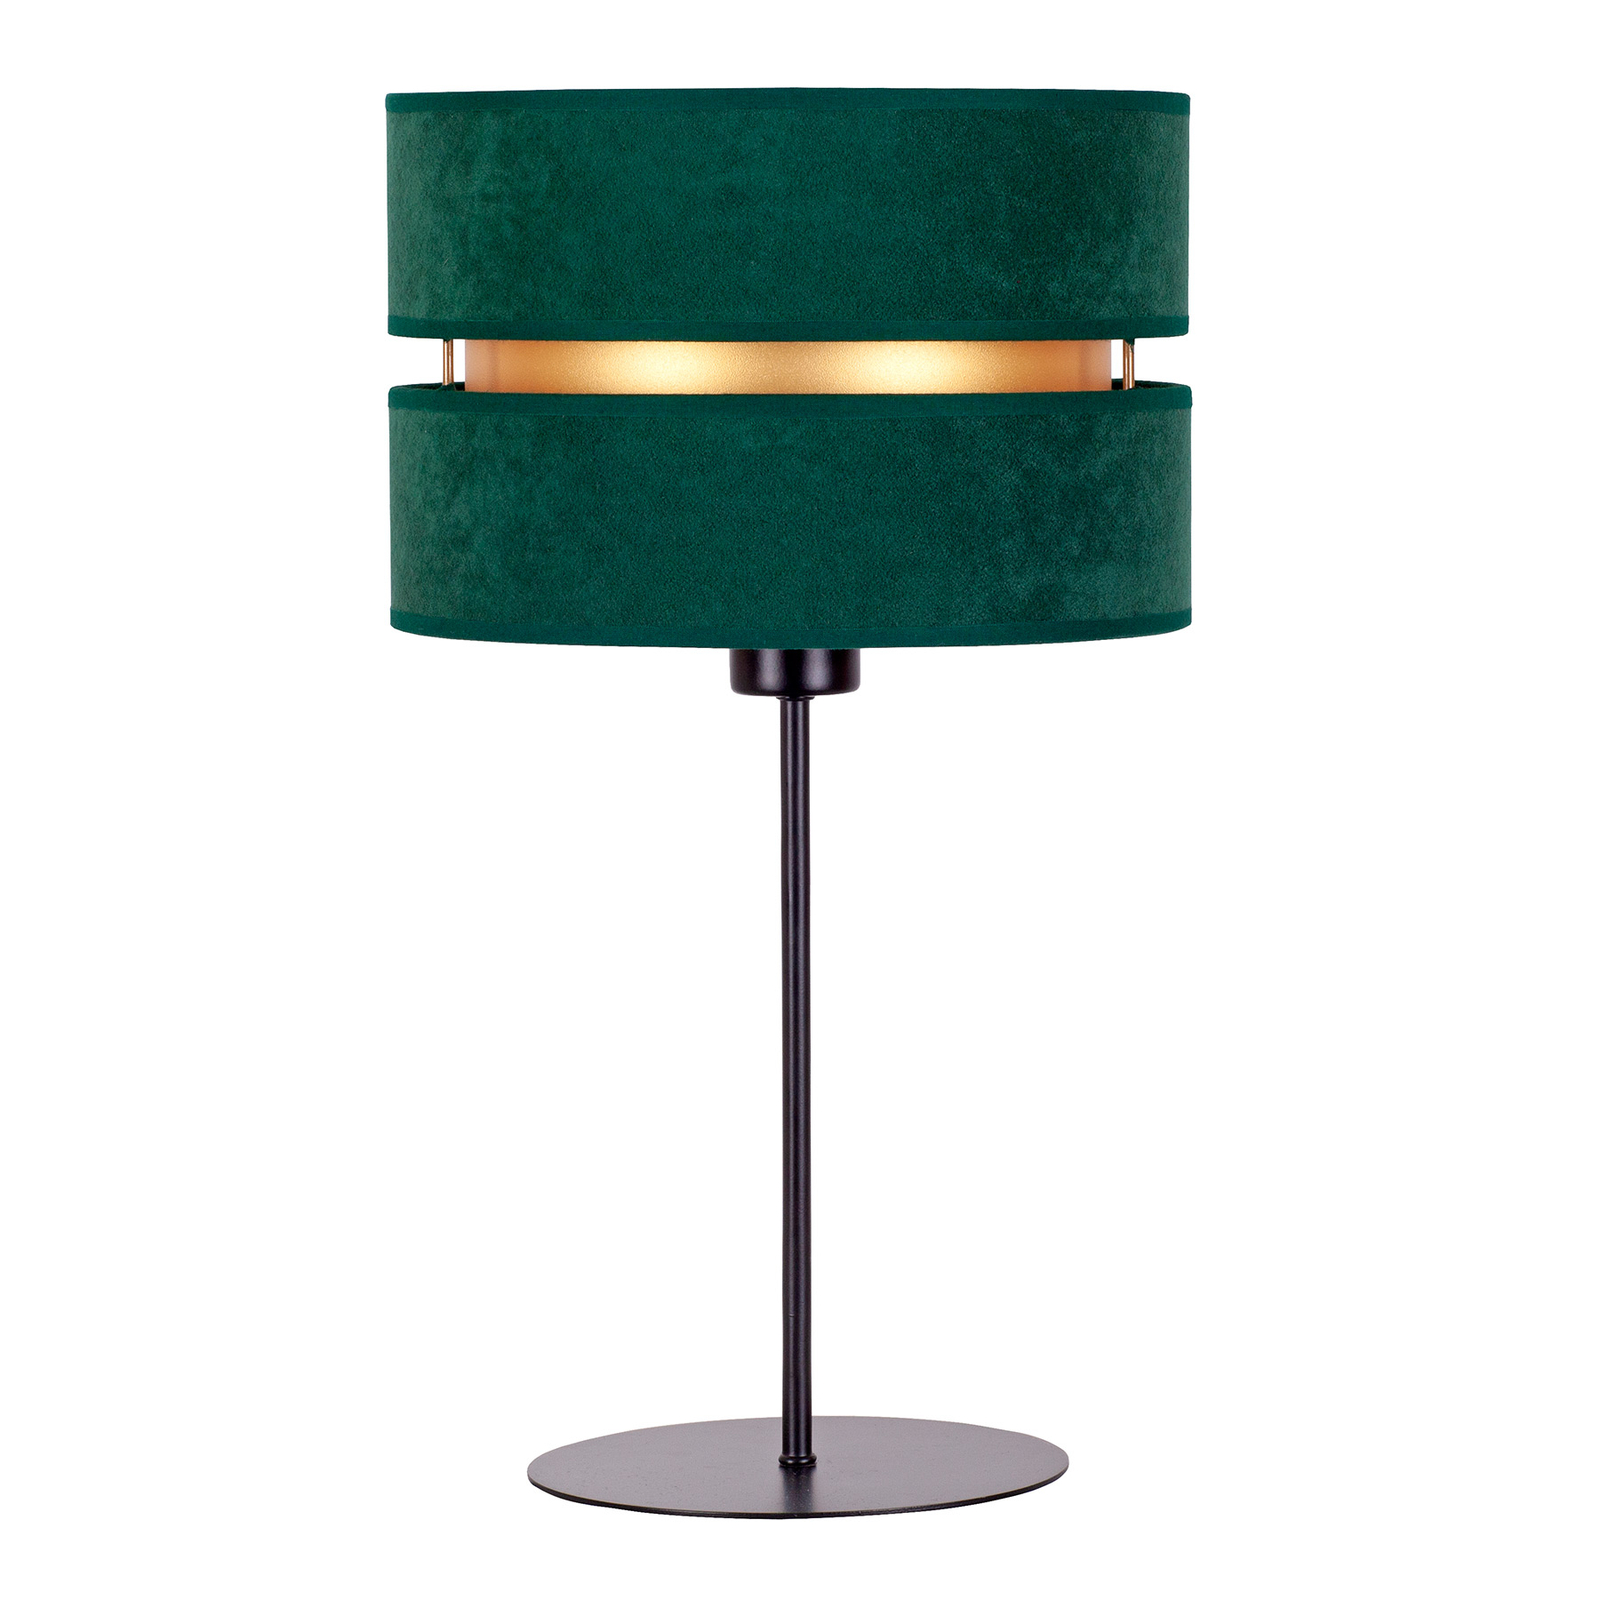 Bordslampa Duo, grön/guld, höjd 50 cm